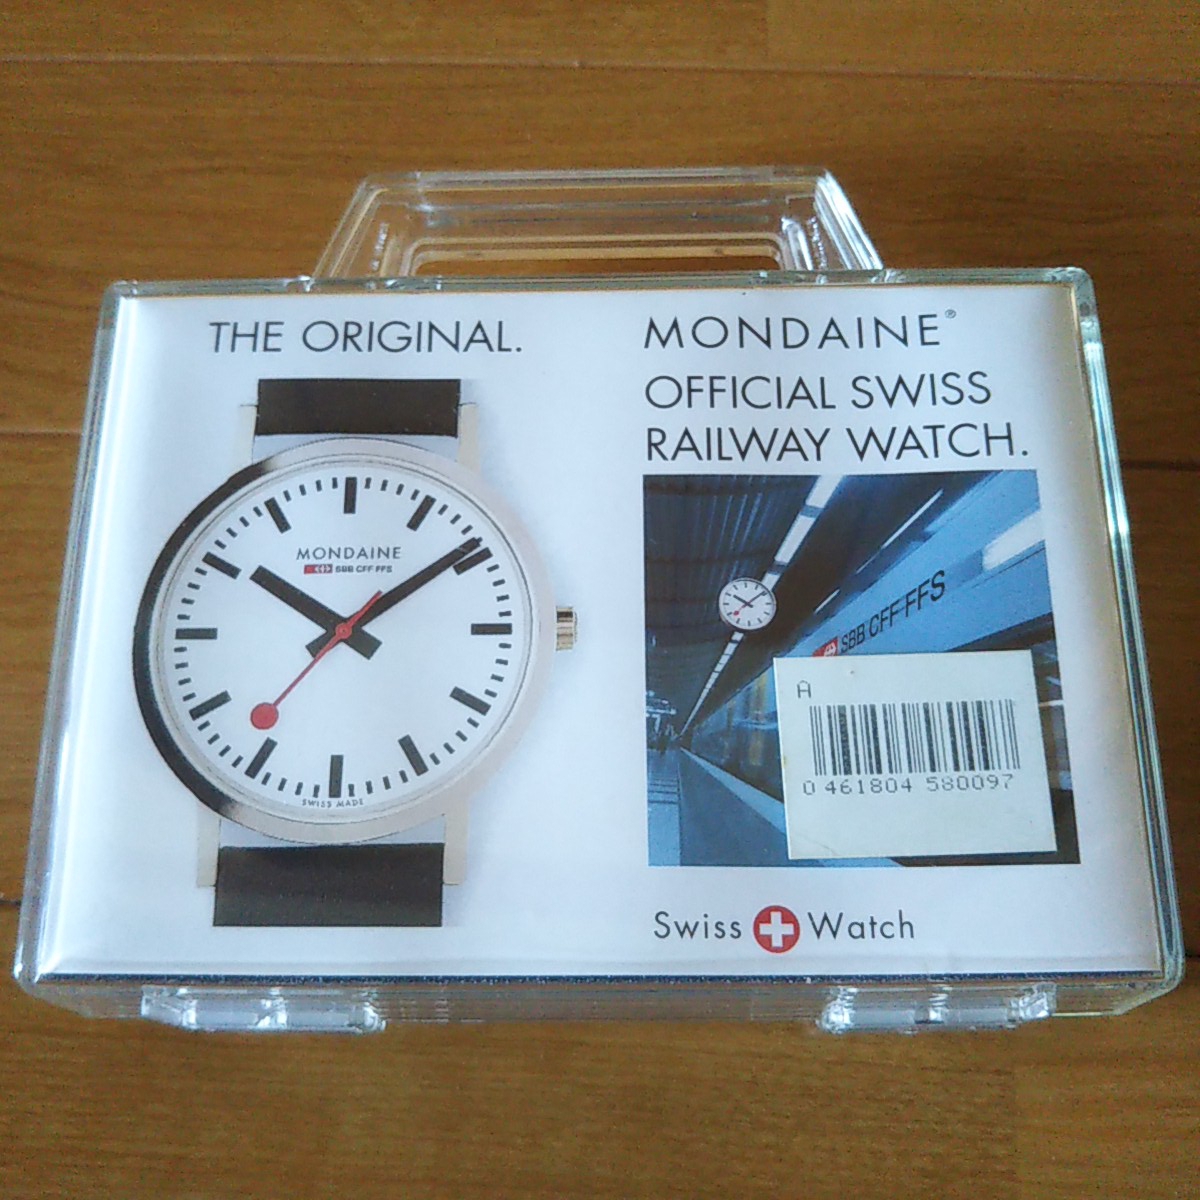 瑞士國家鐵路時鐘Mondyne MONDAINE懷錶未使用的物品電池缺貨 原文:スイス国鉄採用 時計 モンディーン MONDAINE 懐中時計 未使用品 電池切れ品